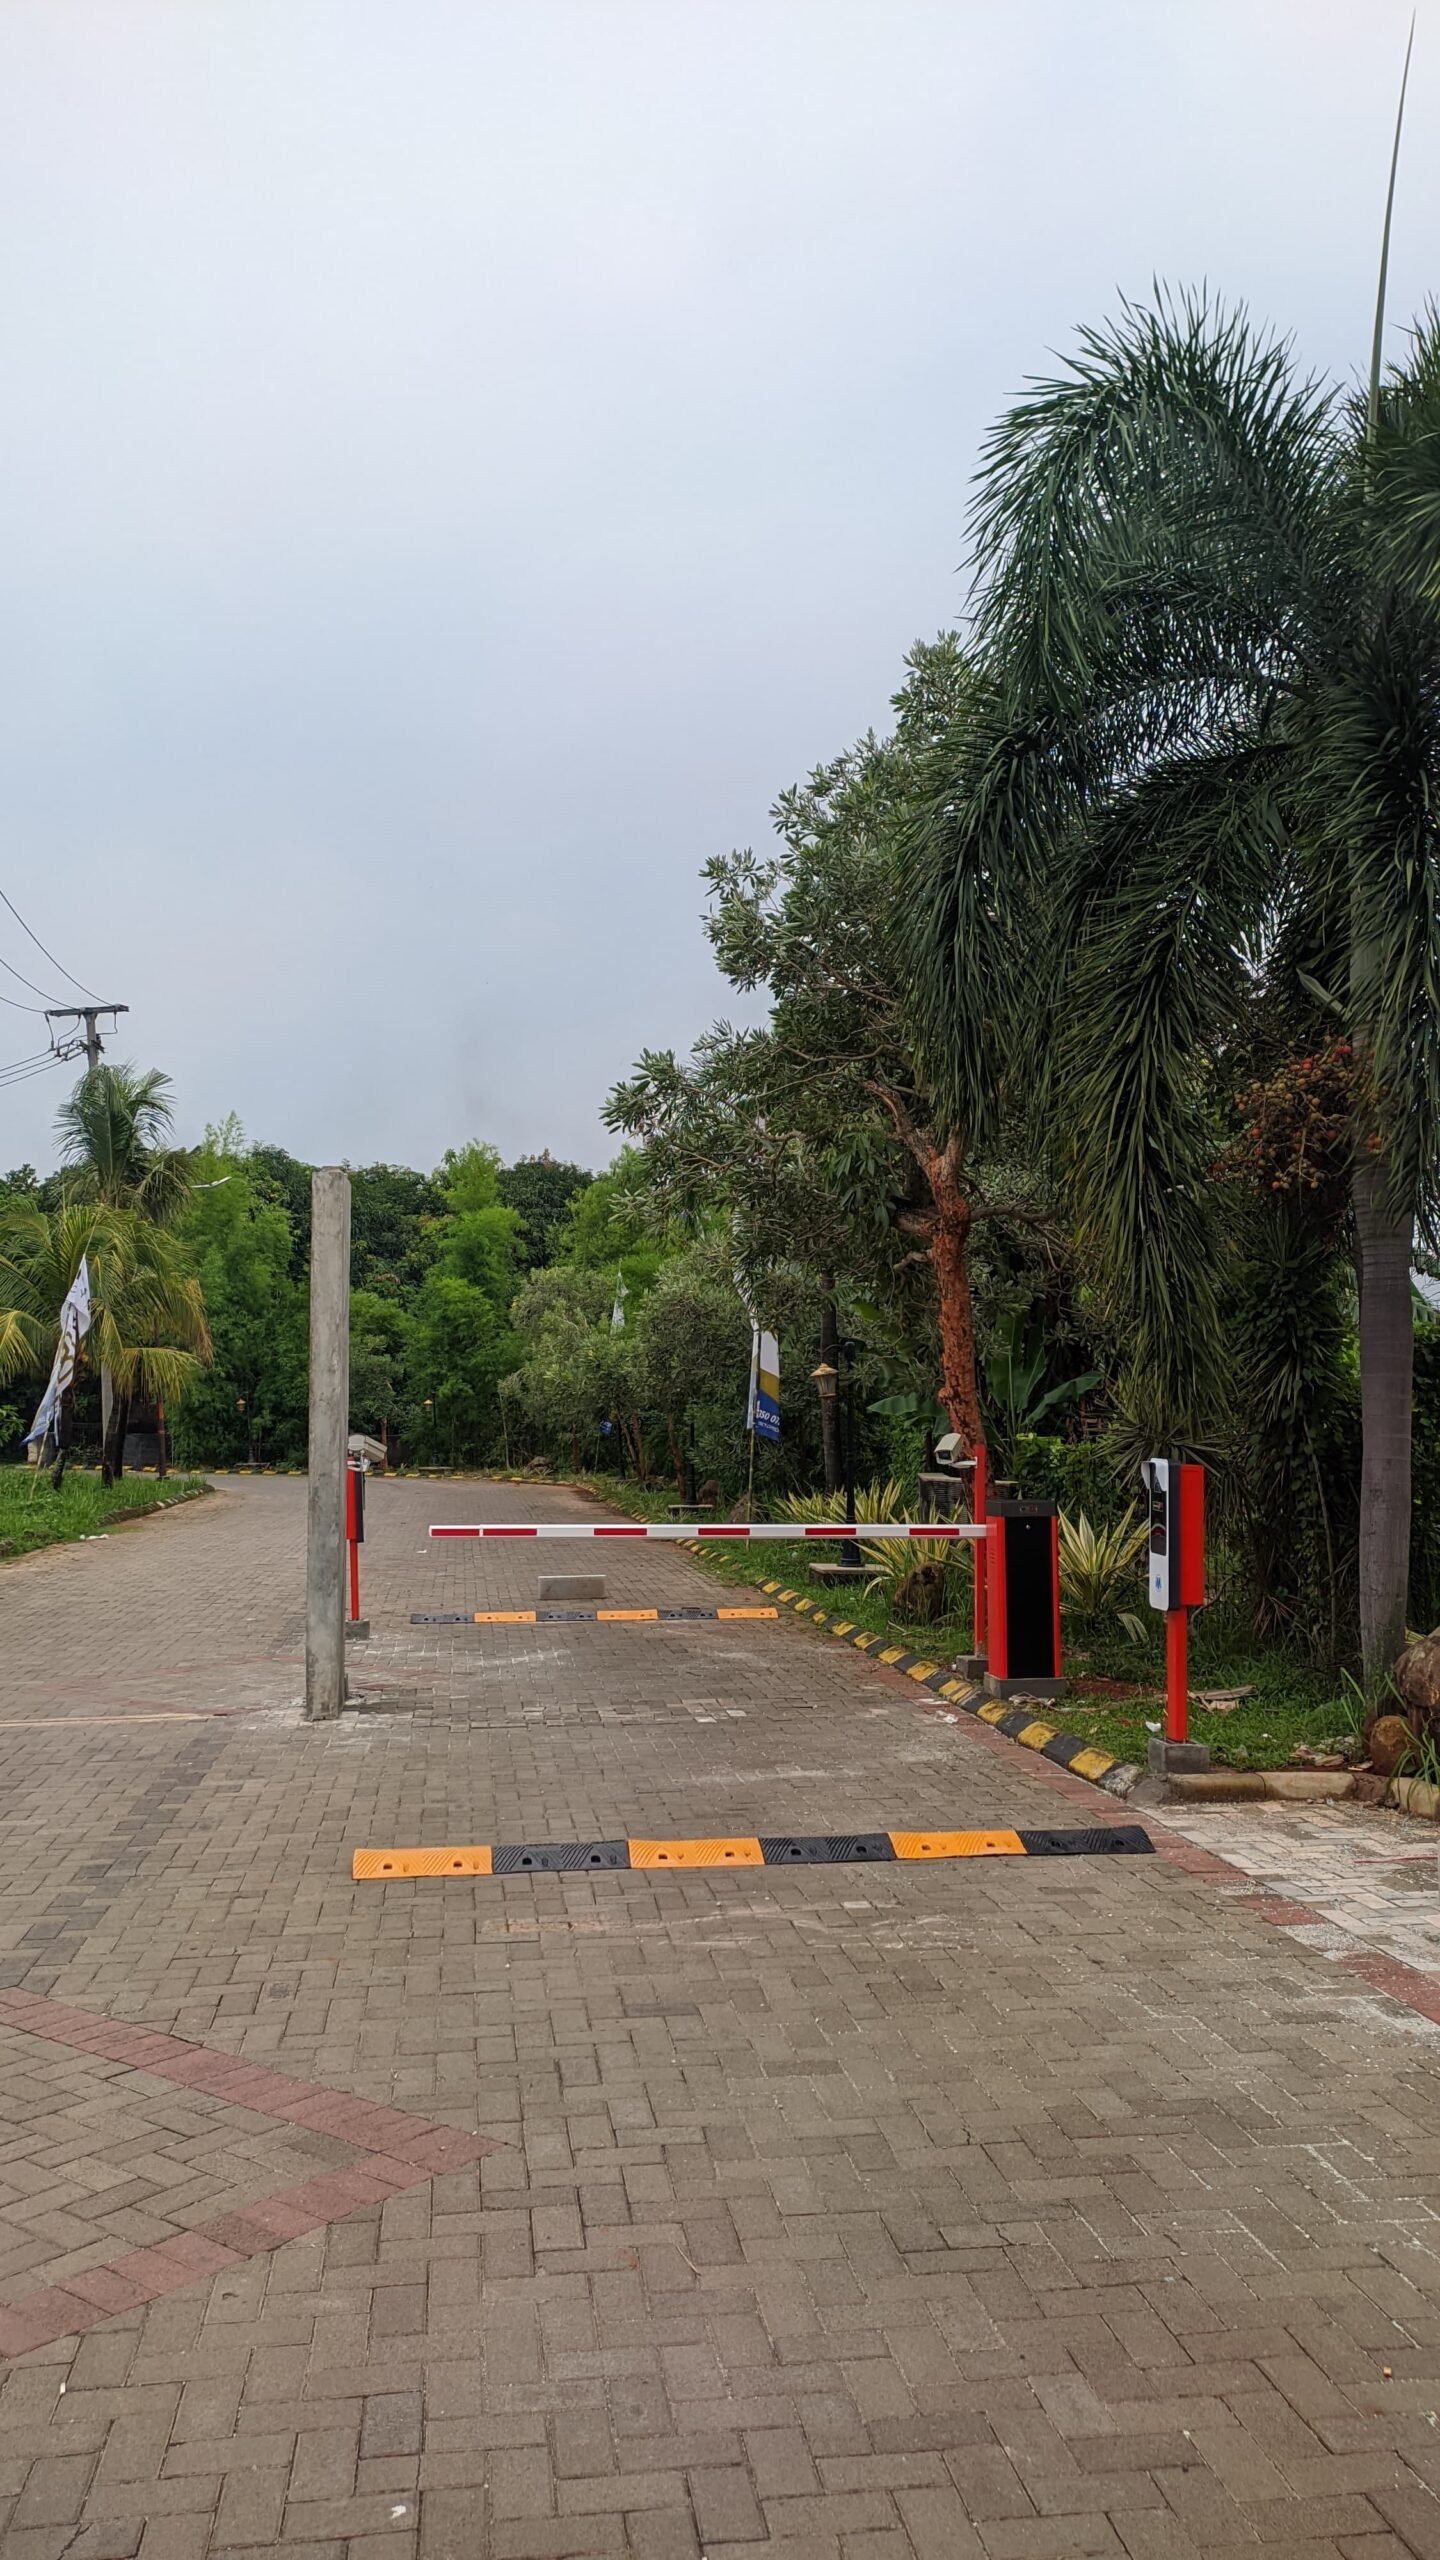 Palang parkir otomatis Yogyakarta telah menjadi solusi canggih dalam pengaturan parkir yang efisien di kota ini.